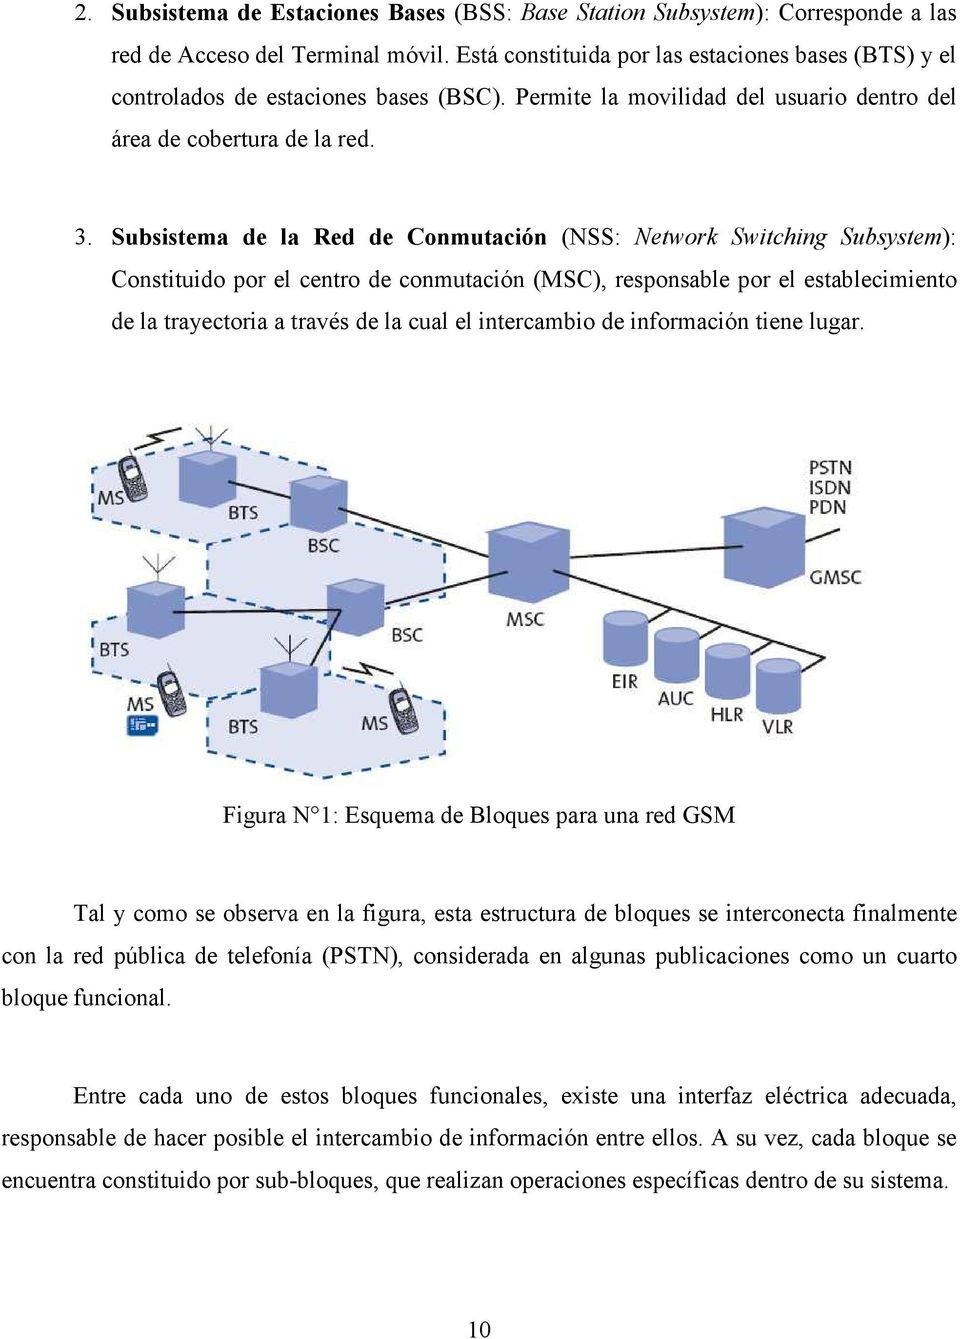 Subsistema de la Red de Conmutación (NSS: Network Switching Subsystem): Constituido por el centro de conmutación (MSC), responsable por el establecimiento de la trayectoria a través de la cual el